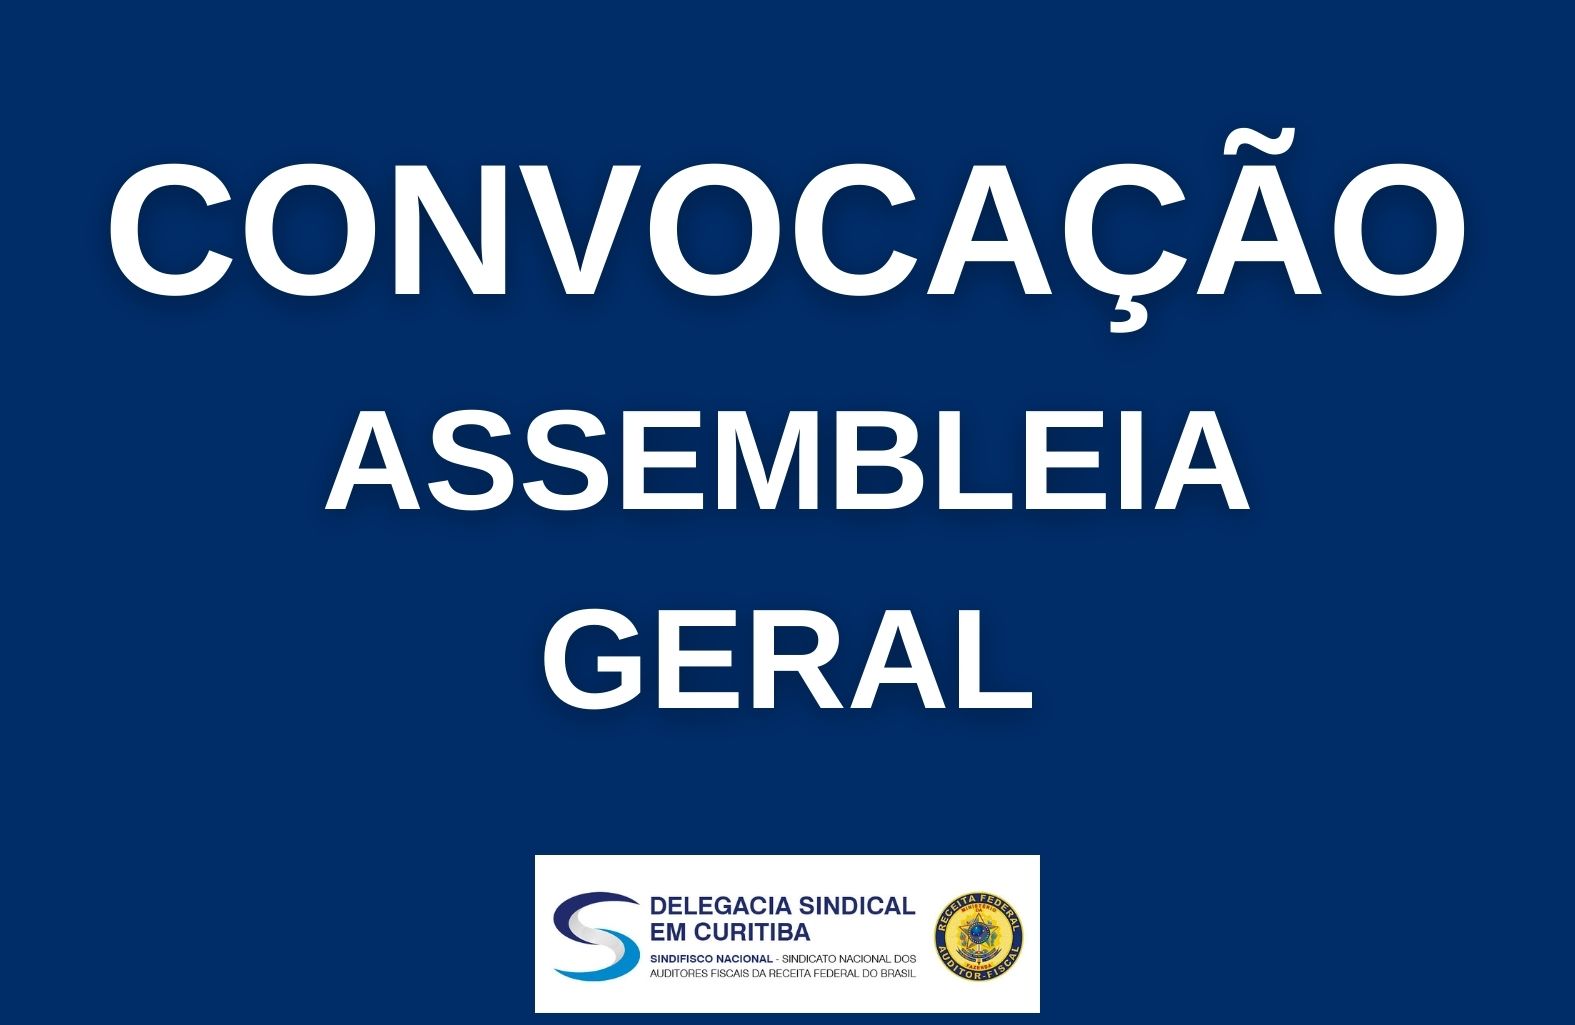 DS Curitiba convoca para Assembleia Geral no dia 26/01, às 14h